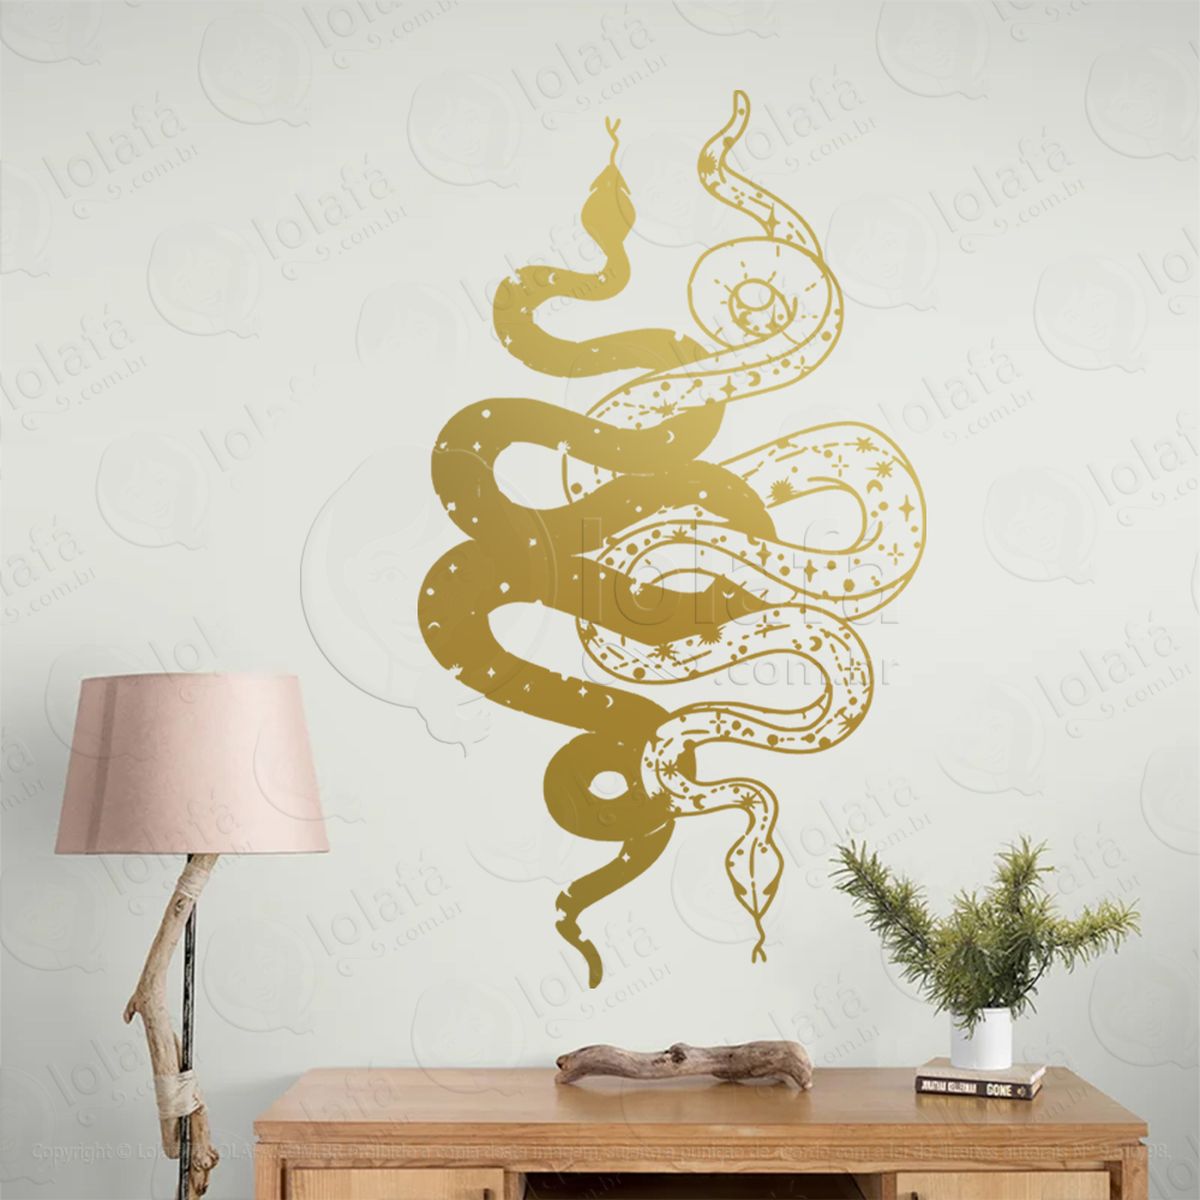 cobras entrelaçadas entwined snakes adesivo de parede decorativo para casa, sala, quarto, vidro e altar ocultista - mod:171